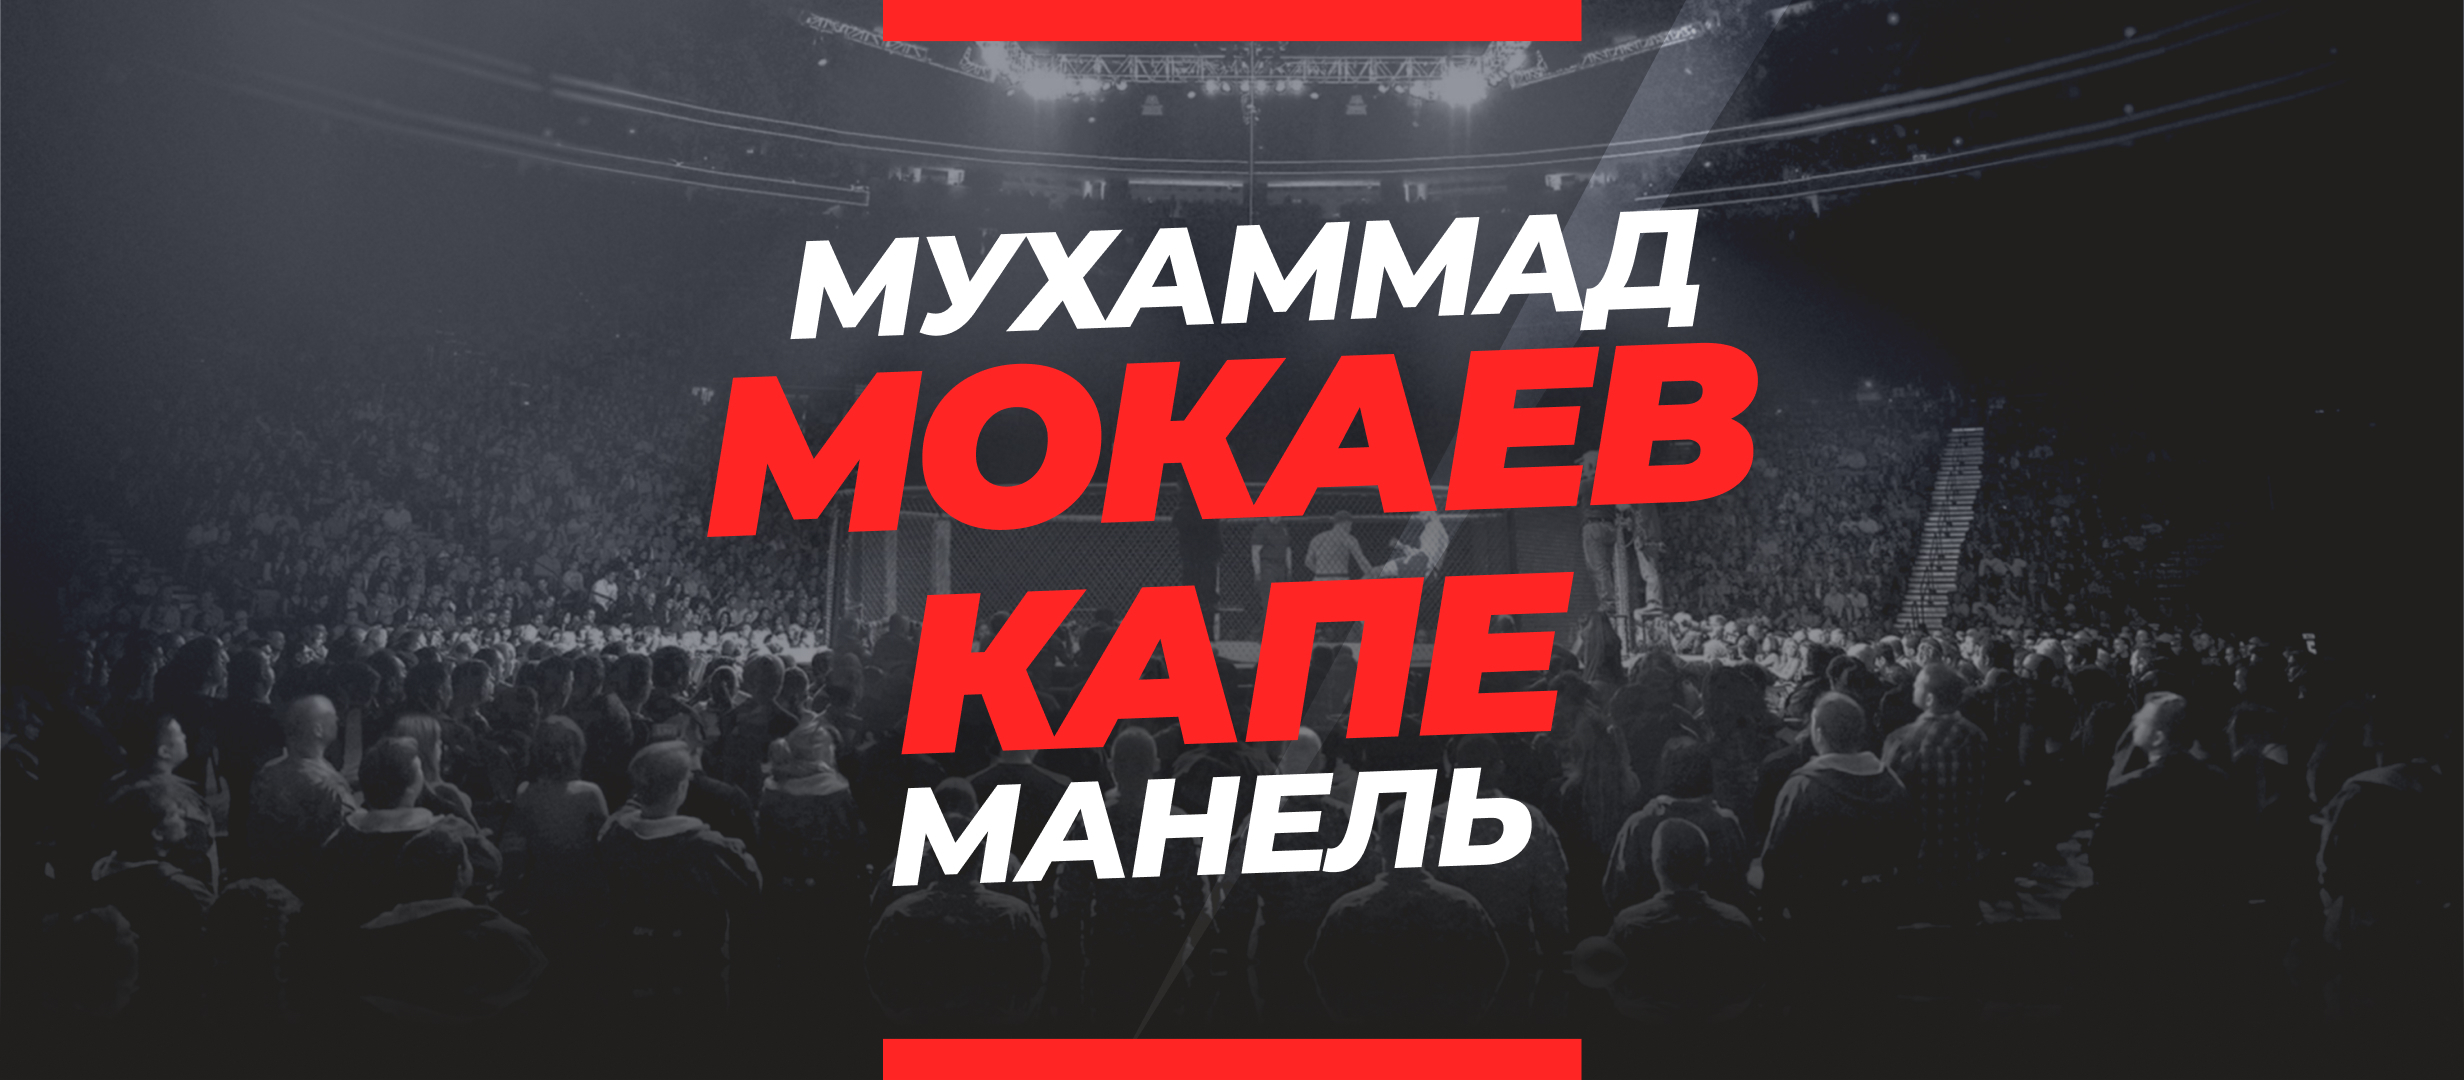 Мокаев — Капе: ставки и коэффициенты на бой